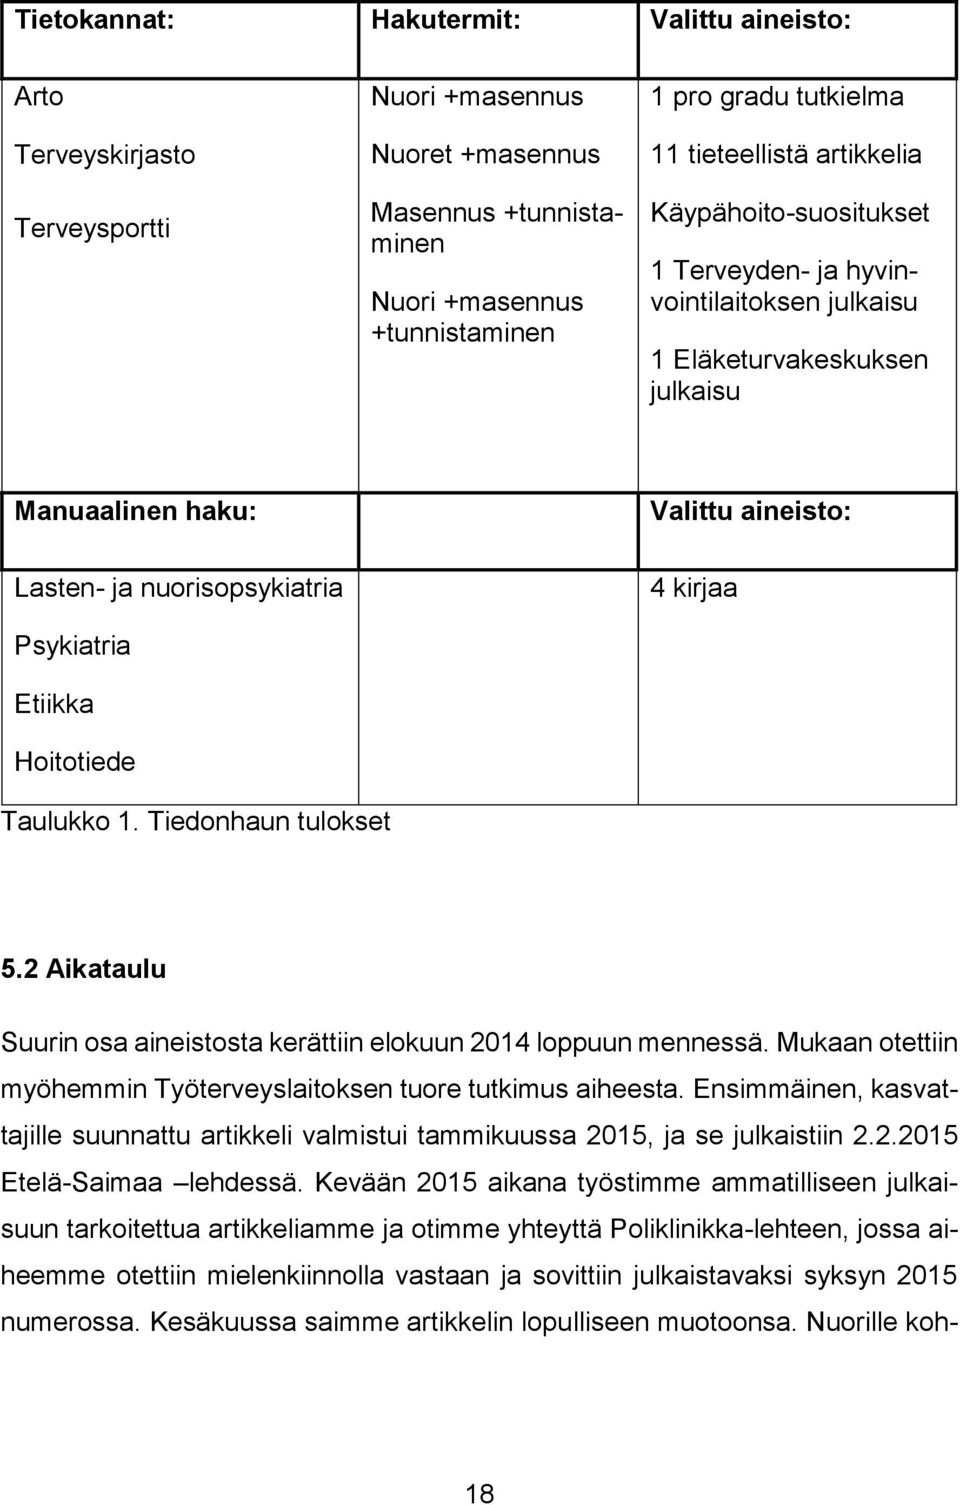 Etiikka Hoitotiede 4 kirjaa Taulukko 1. Tiedonhaun tulokset 5.2 Aikataulu Suurin osa aineistosta kerättiin elokuun 2014 loppuun mennessä.